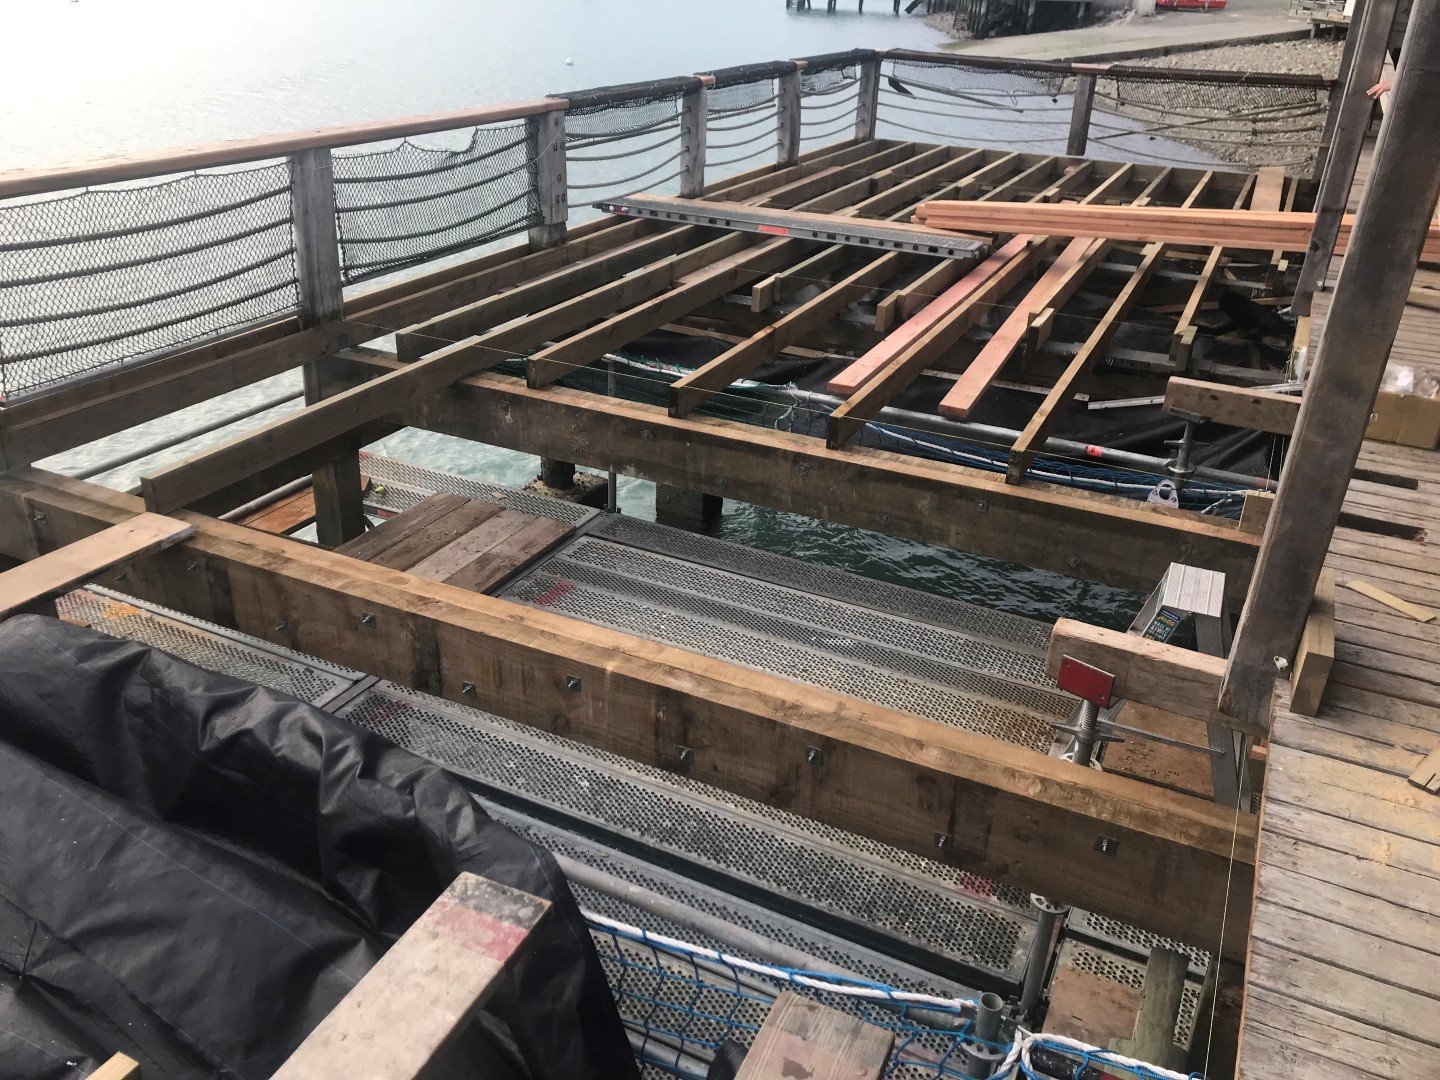  The Boathouse - Storm damage rebuild 